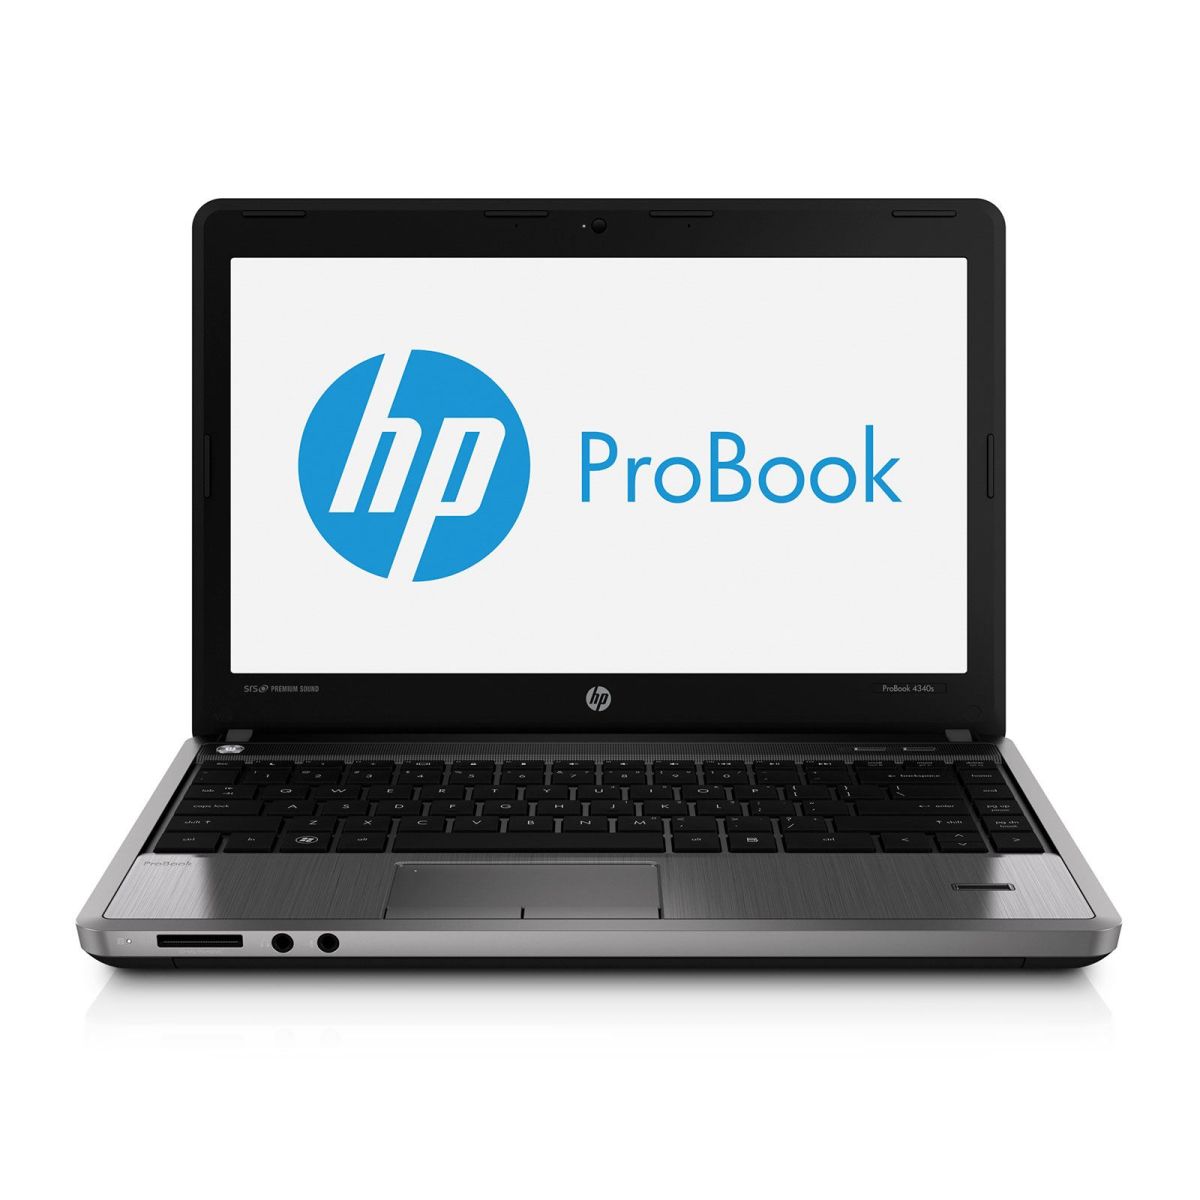 HP ProBook 4340s - C5C75EA laptop specifications